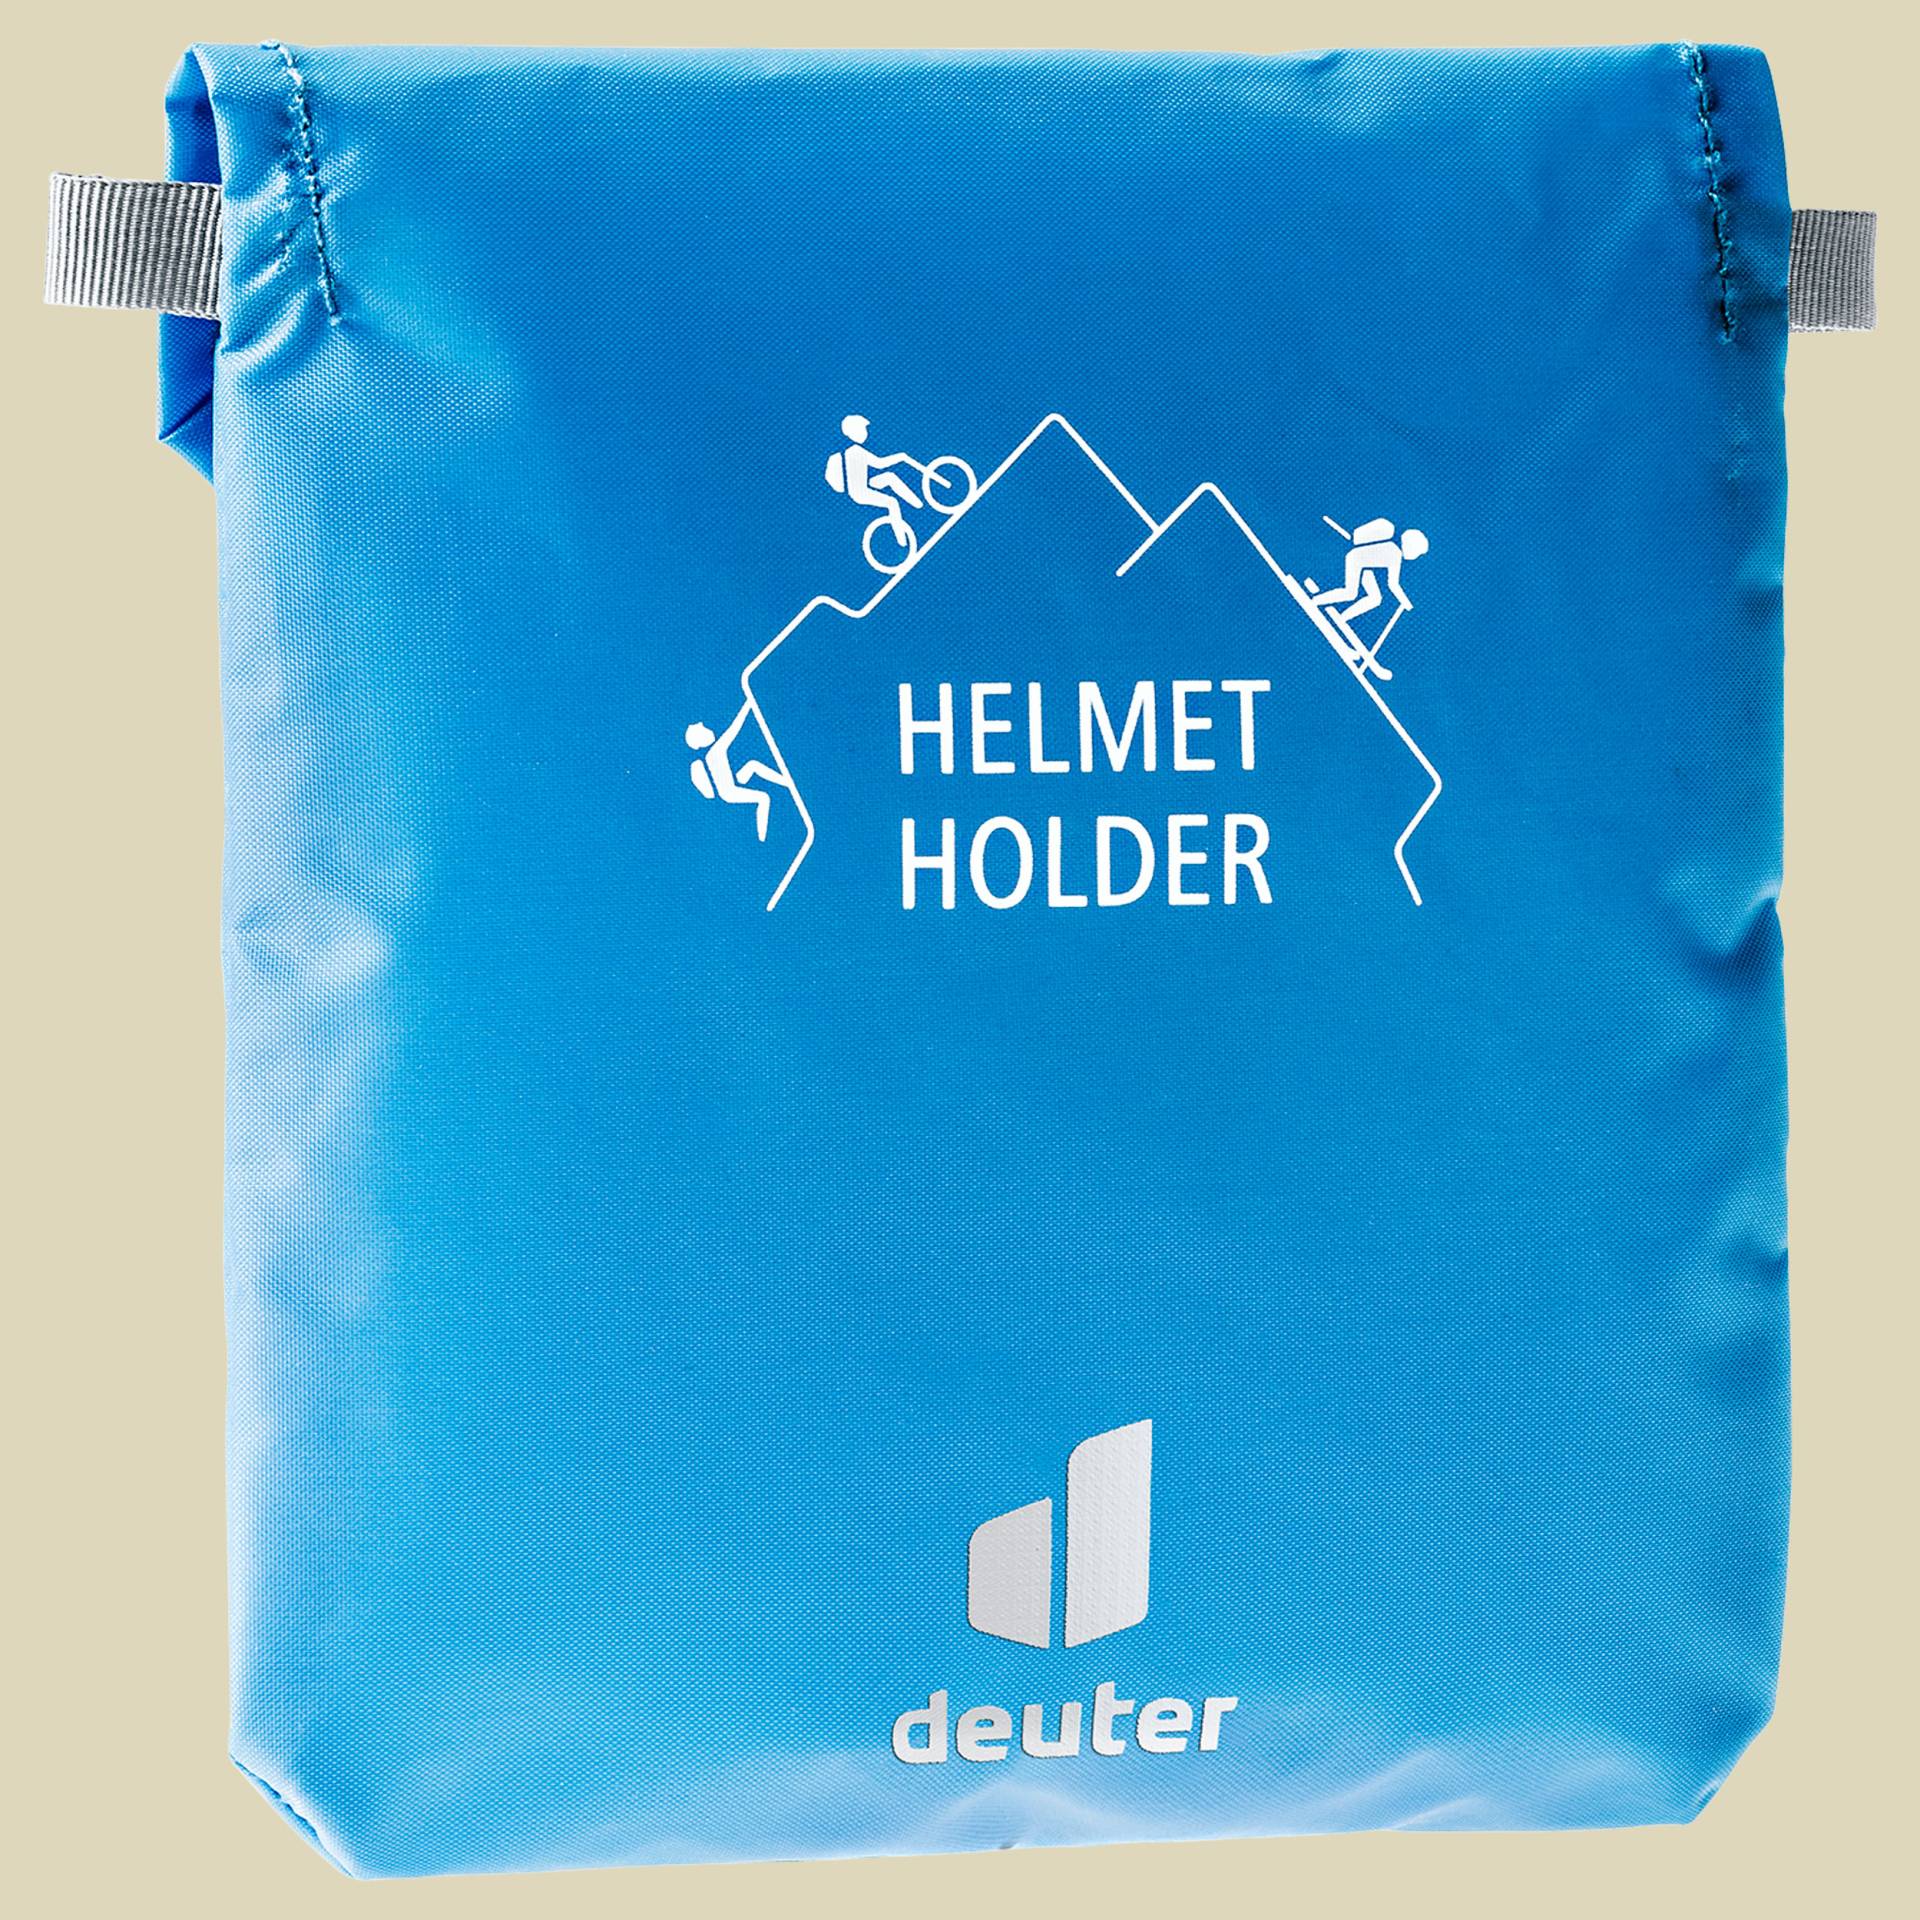 Helmet Holder 3922321 von Deuter